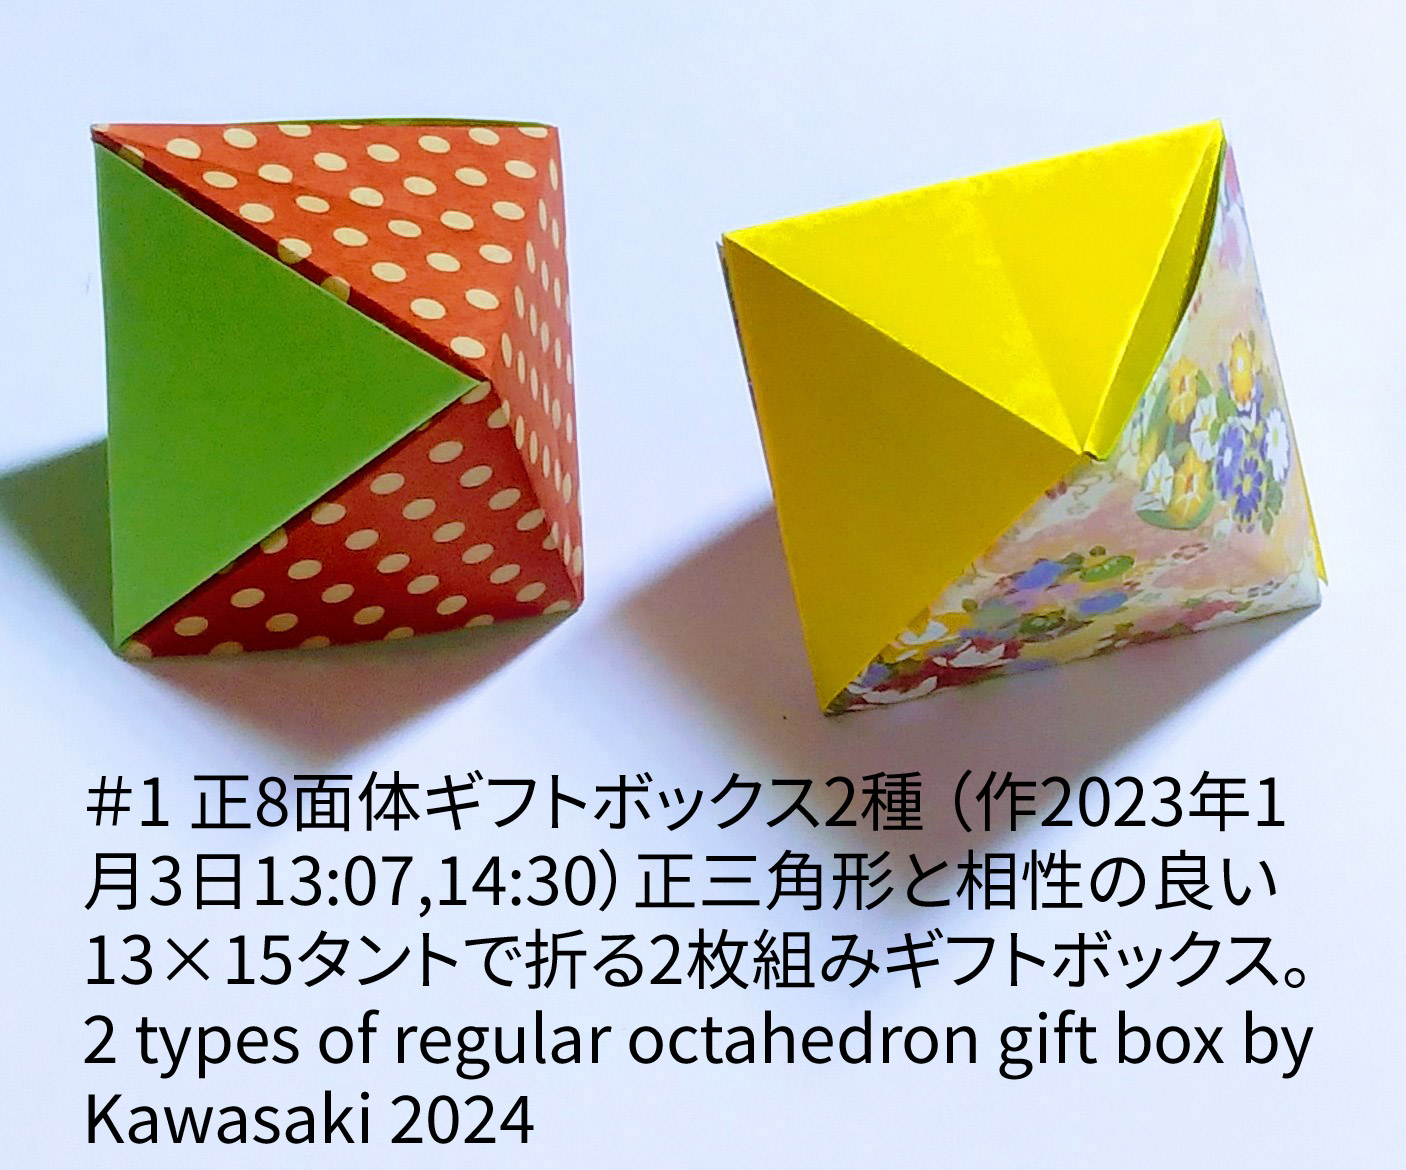 2024/01/04(Thu) 00:47「＃1 正8面体ギフトボックス2種 2 types of regular octahedron gift box（作2024年1月3日13:07,14:30）」川崎敏和 T.Kawasaki
（創作者 Author：川崎敏和 T.Kawasaki,　製作者 Folder：川崎敏和 T.Kawasaki ,　出典 Source：2024年川崎敏和折り紙キット＃1）
 正三角形と相性の良い13×15タントで折る2枚組みギフトボックスです。 2 types of regular octahedron gift box by Kawasaki 2024